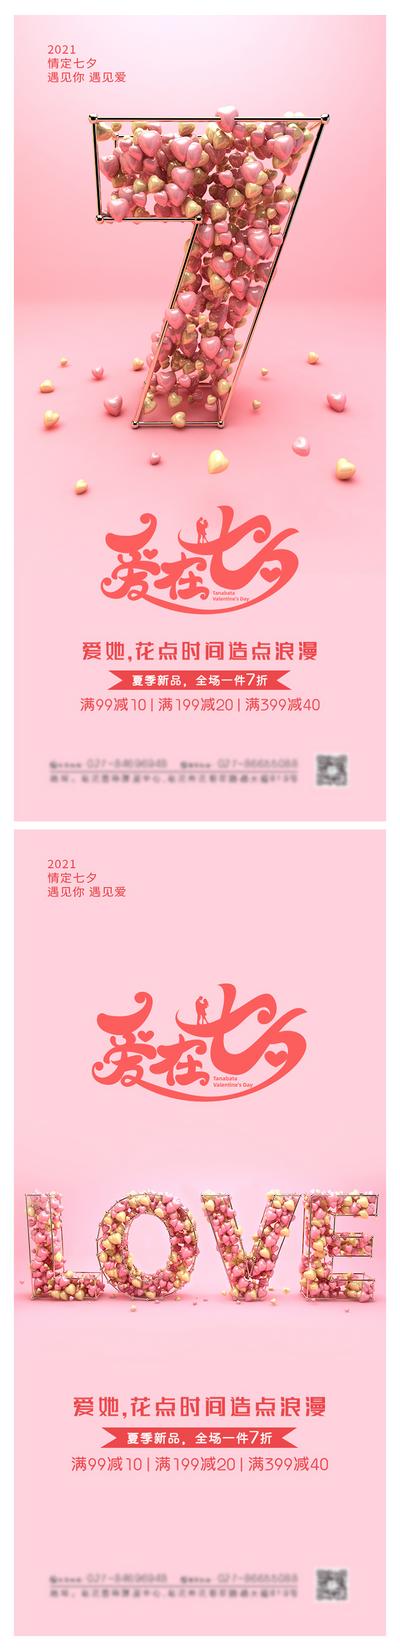 南门网 海报 中国传统节日 七夕 浪漫 情人节 促销 气球